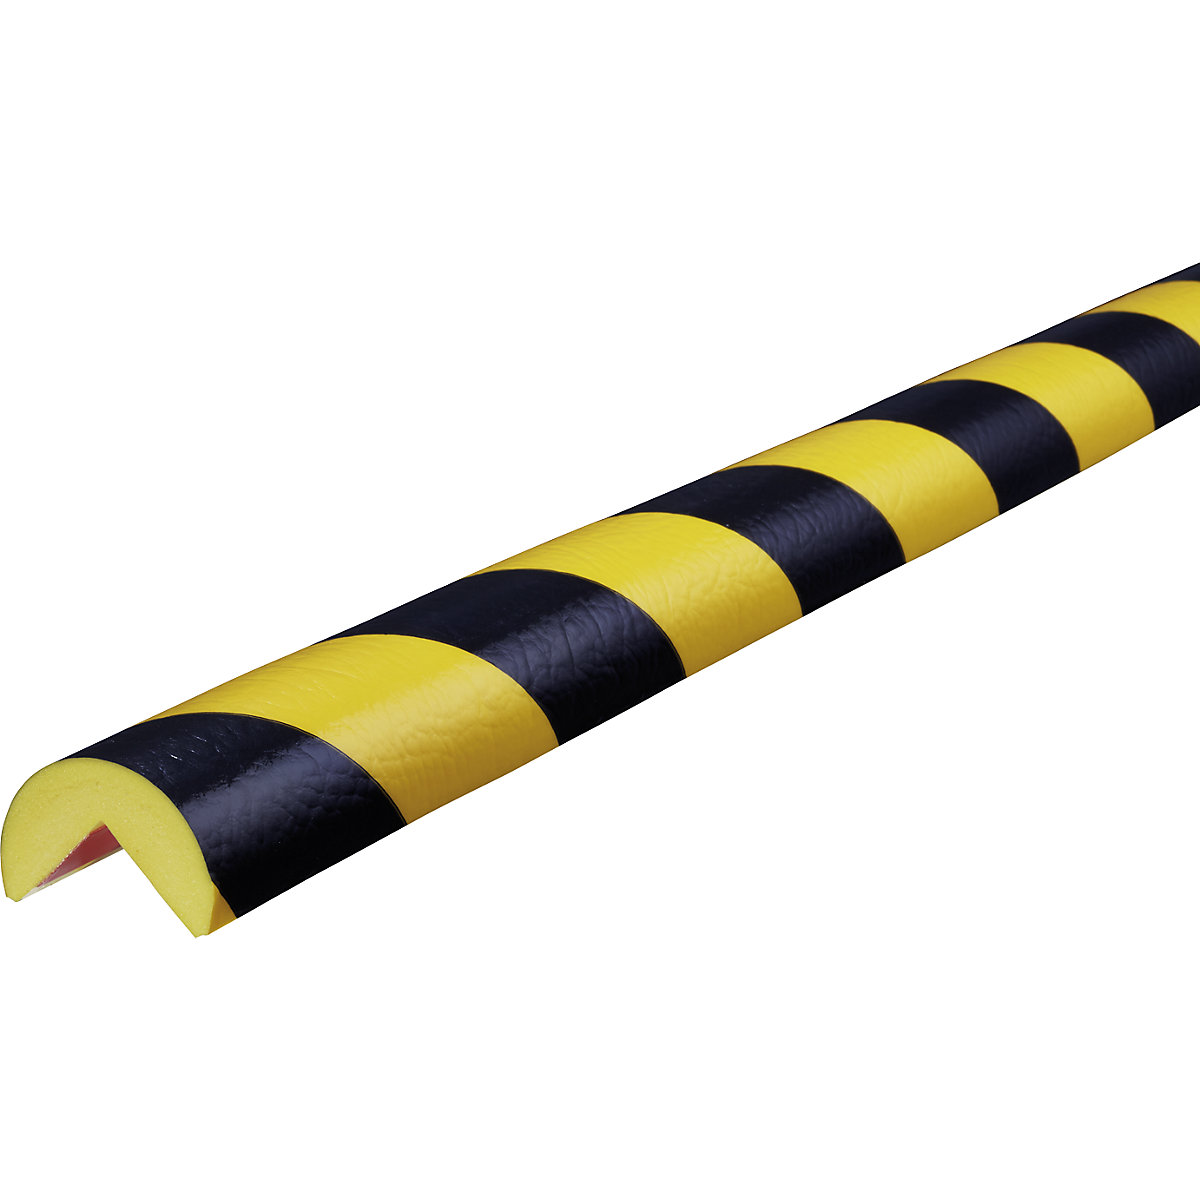 Knuffi®-hoekbescherming – SHG, type A, stuk van 1 m, zwart/geel-19